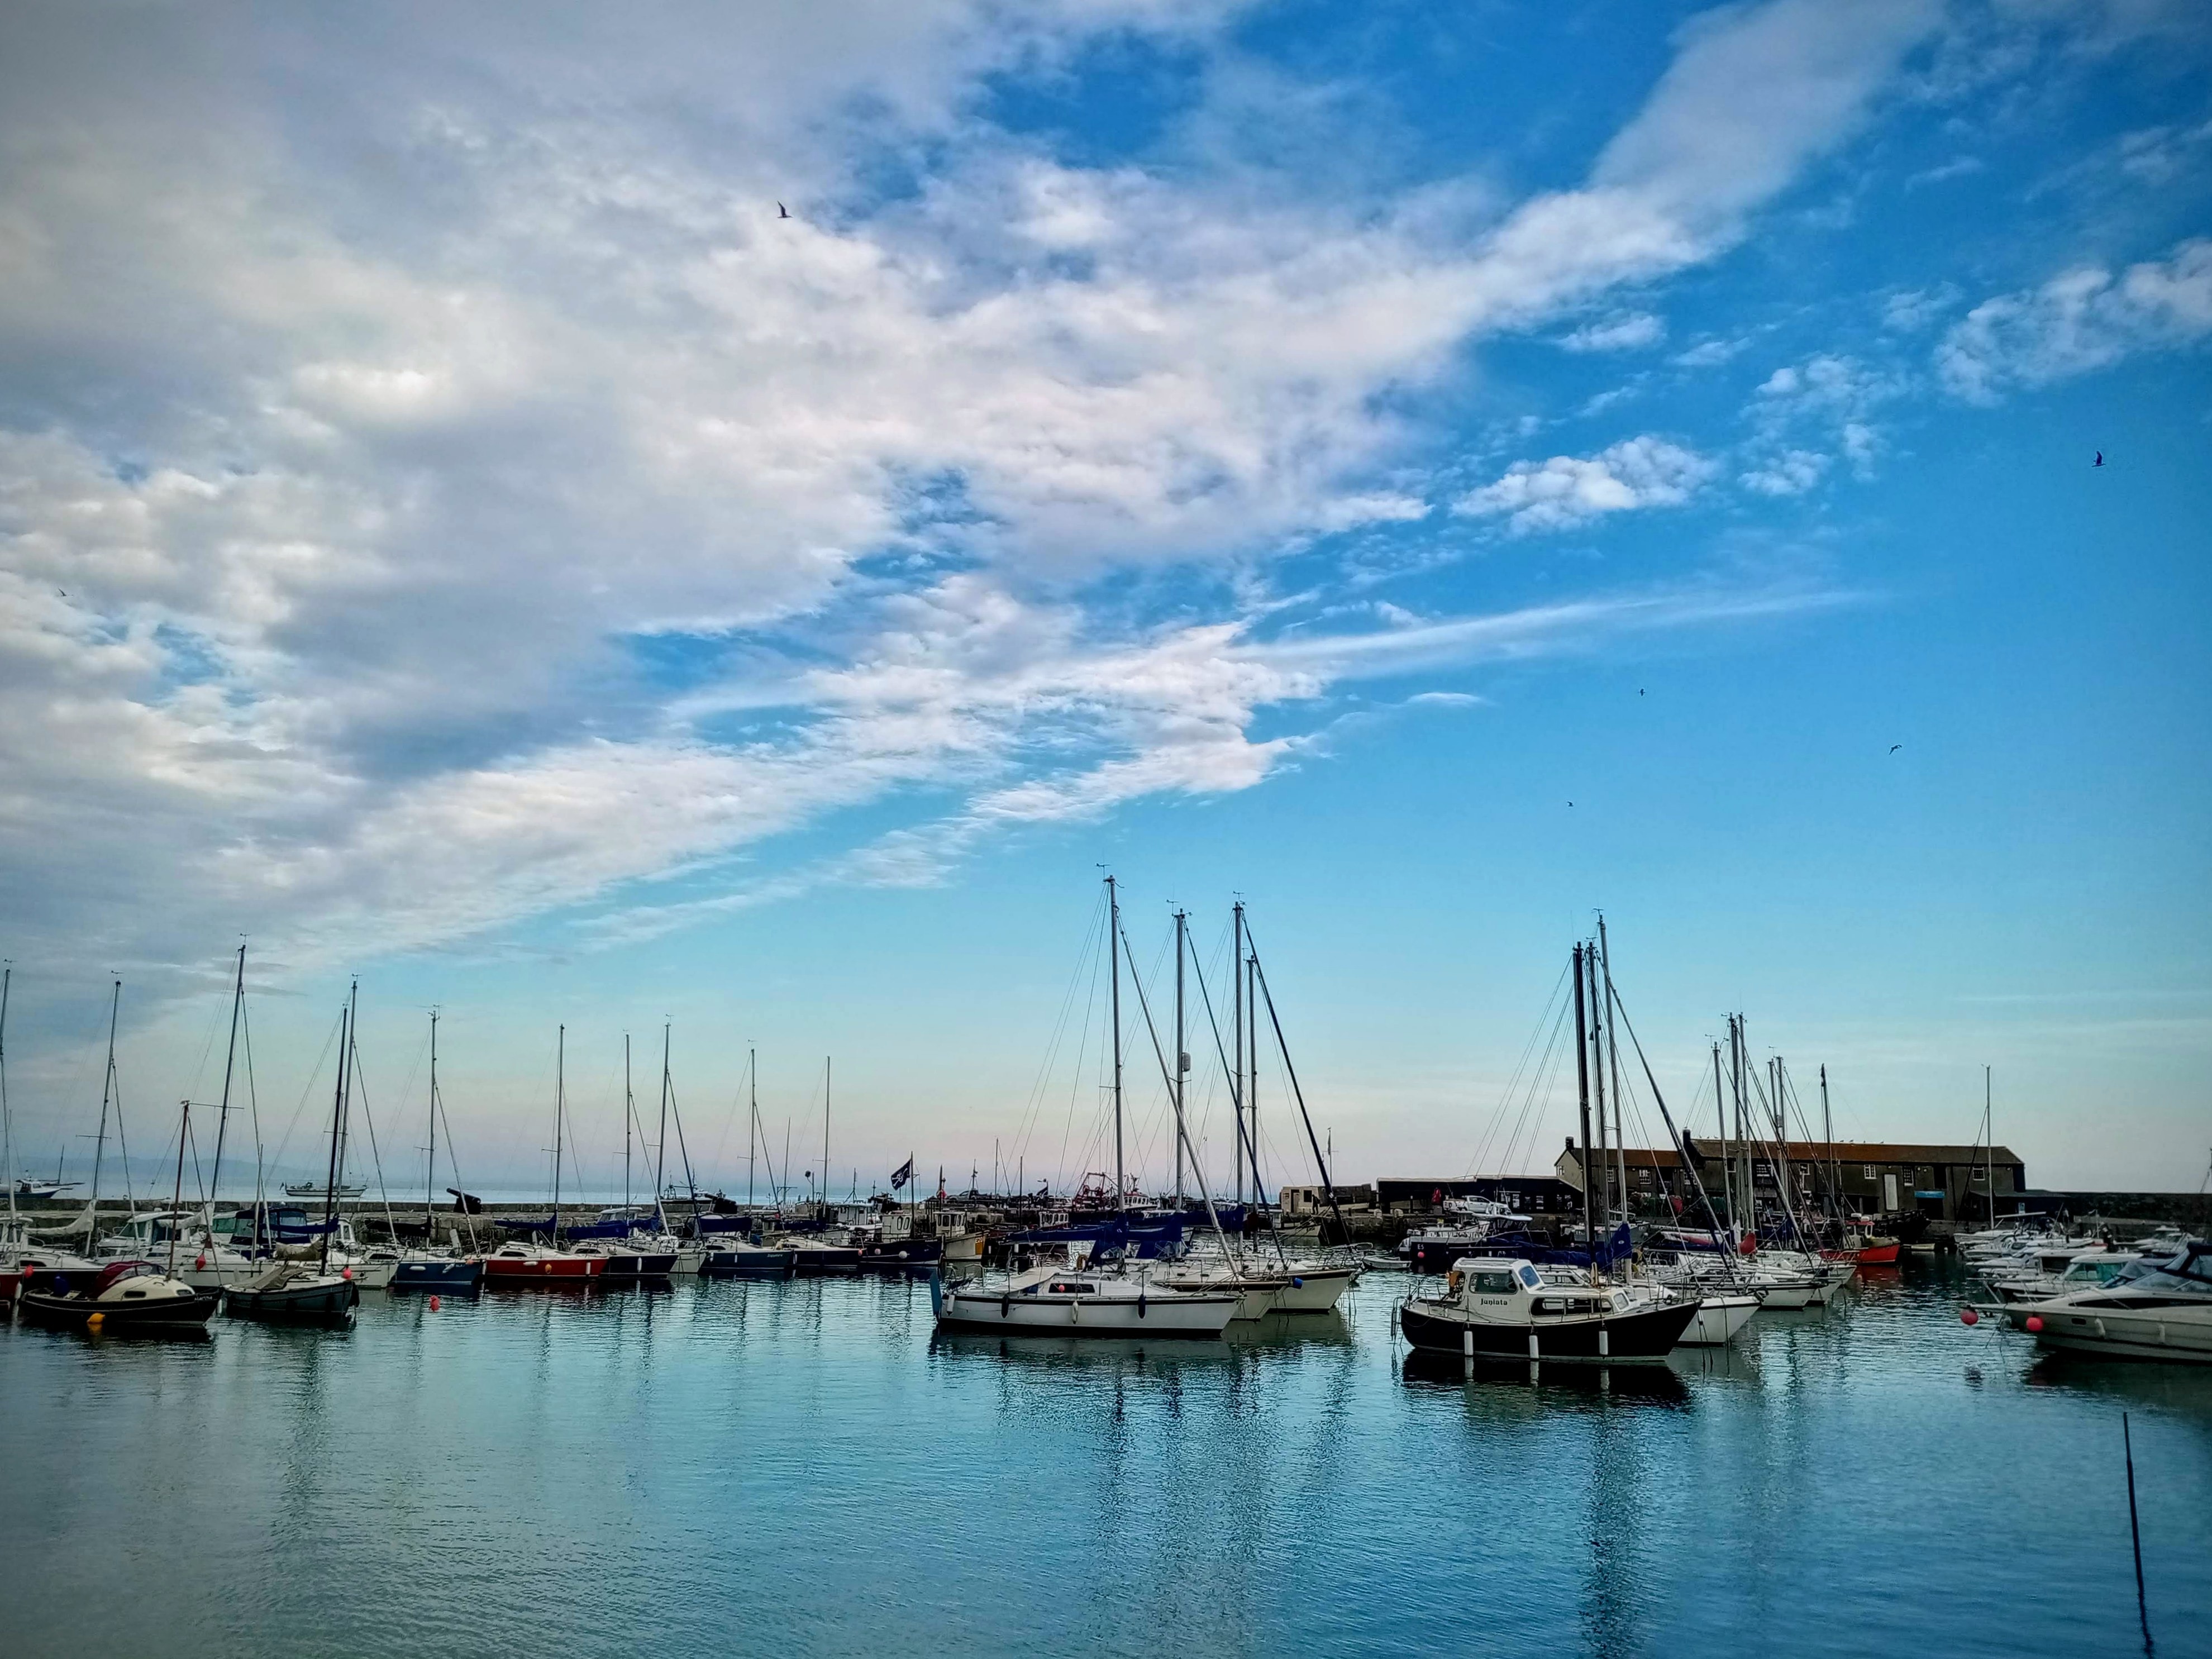 Lyme regis harbour